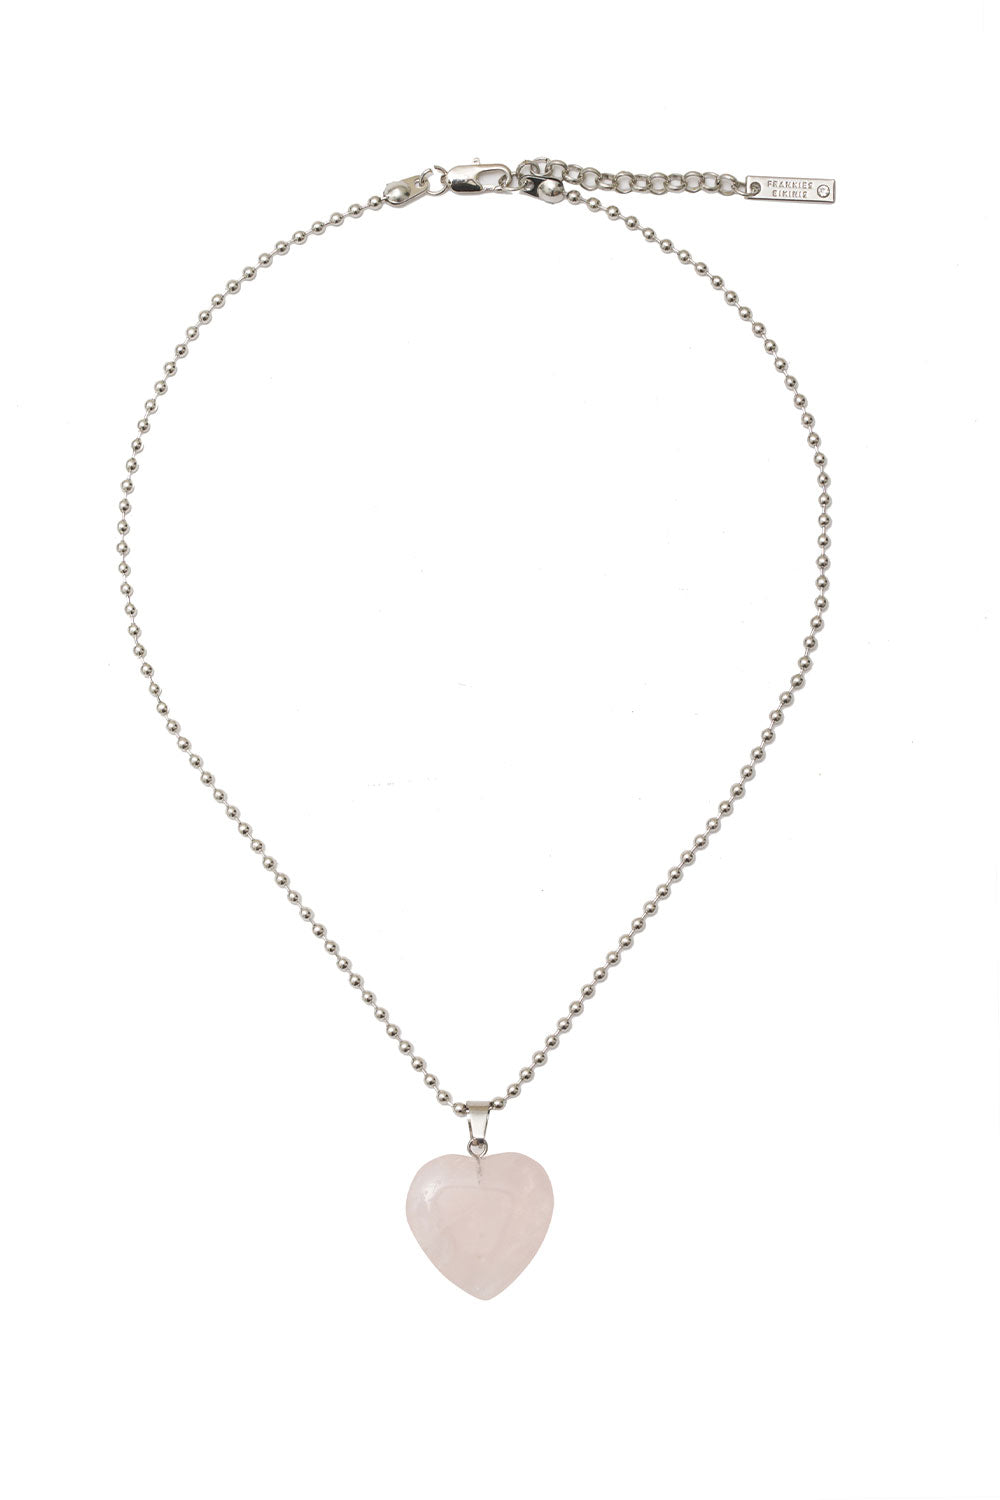 Mimi Rose Quartz Heart Necklace - Aurora